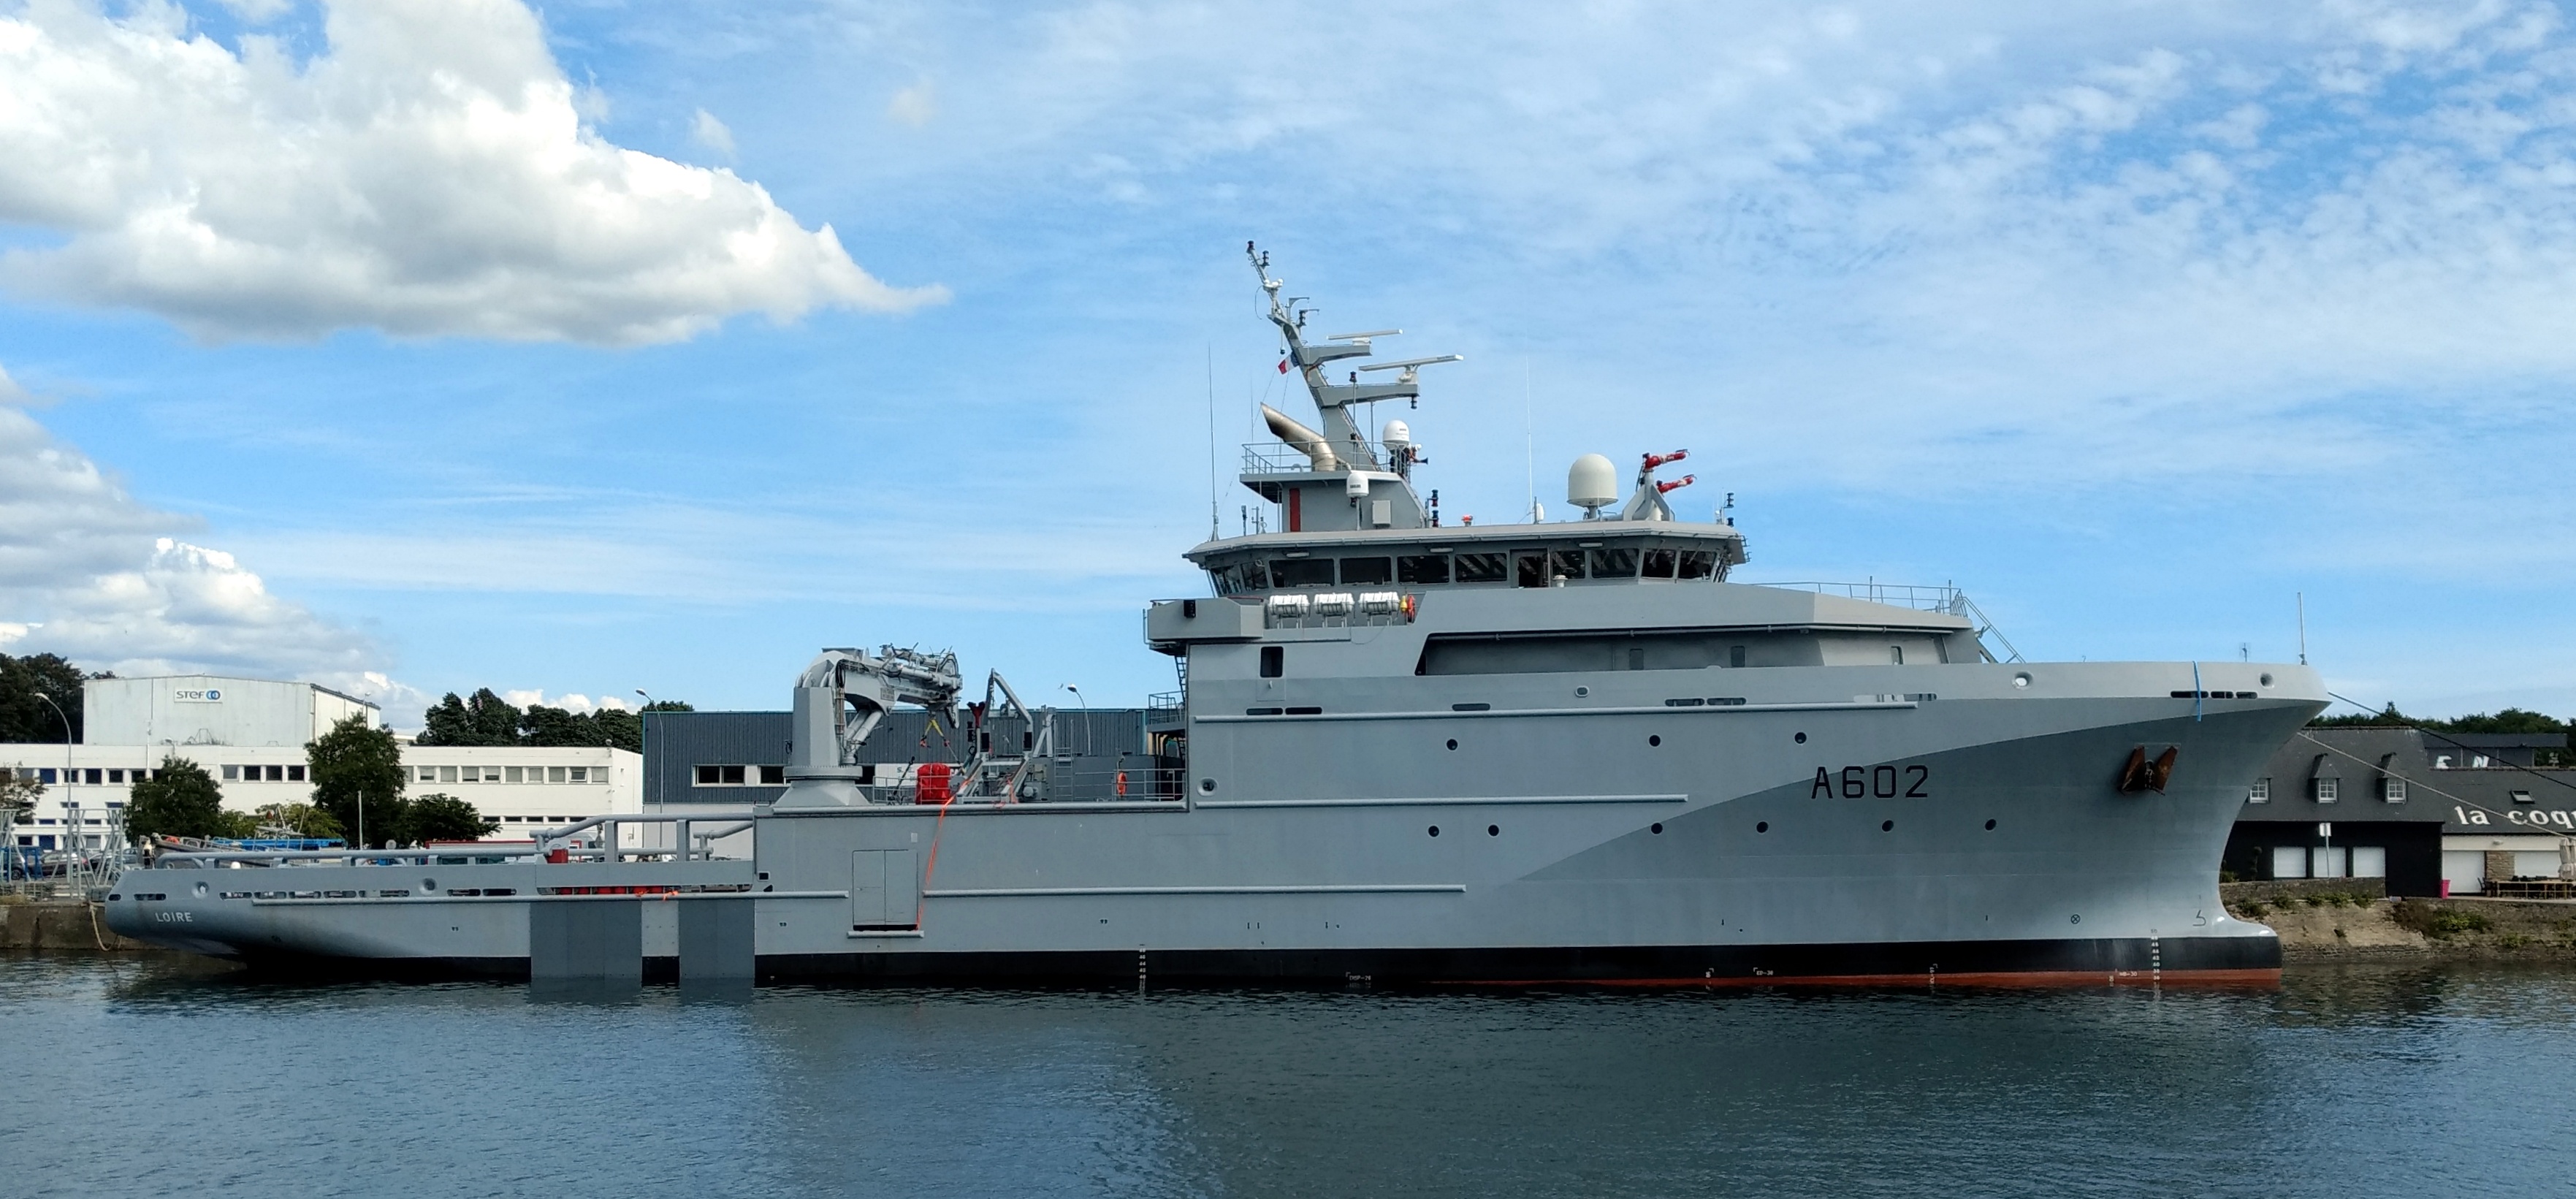 Le navire militaire "Loire" fait escale au port de Bonifacio